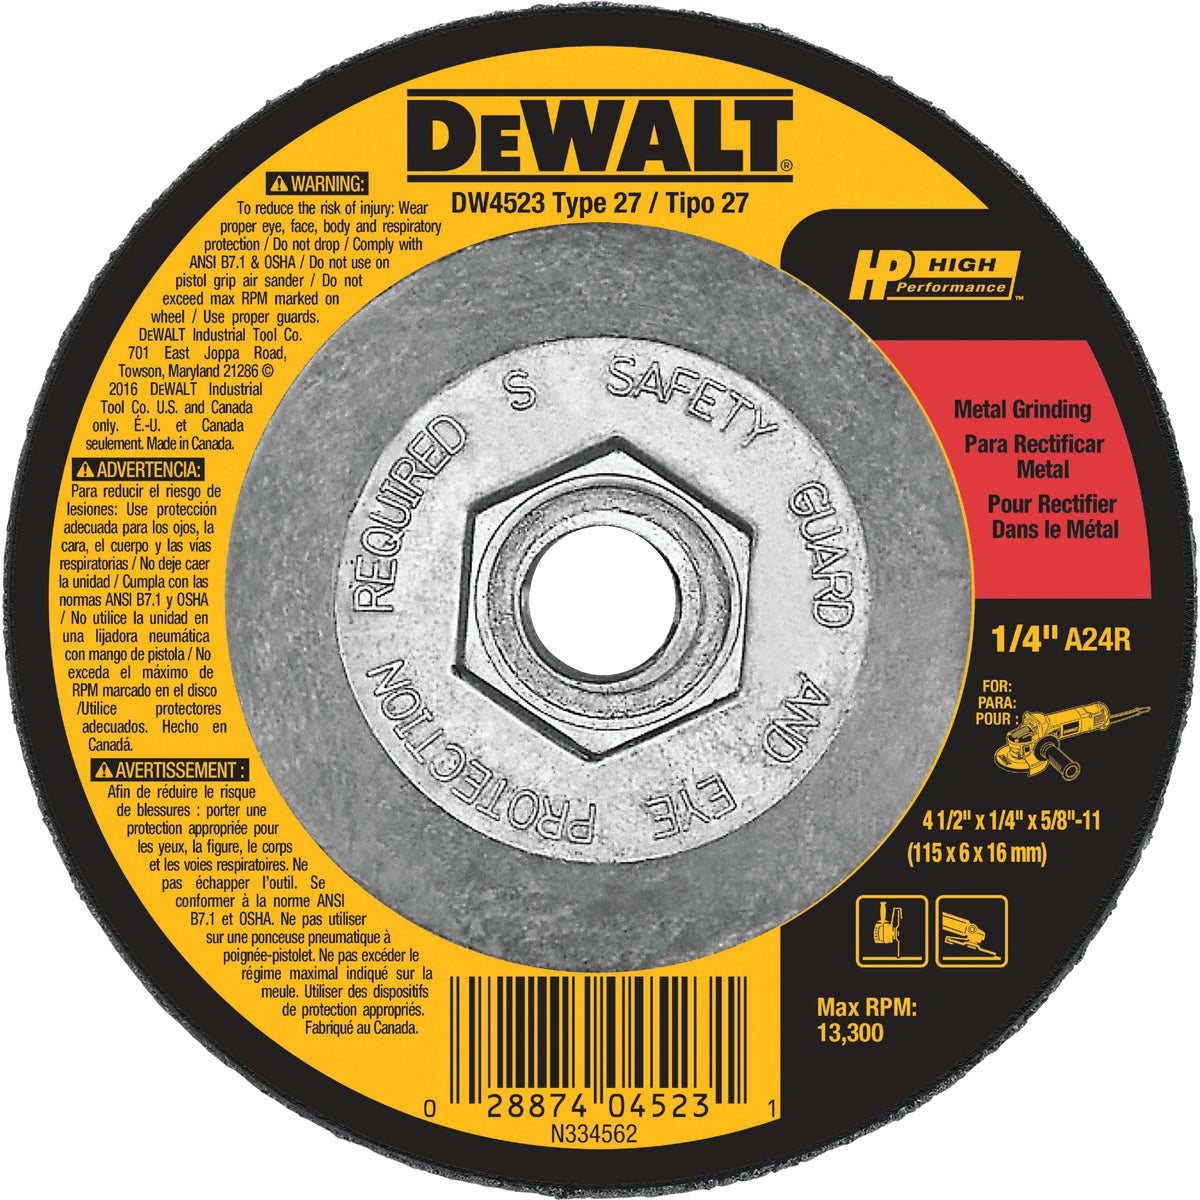 DEWALT HP Type 27 4-1 In. x 1/4 In. x 5/8 In.-11 Metal Grinding Cut-Off Wheel